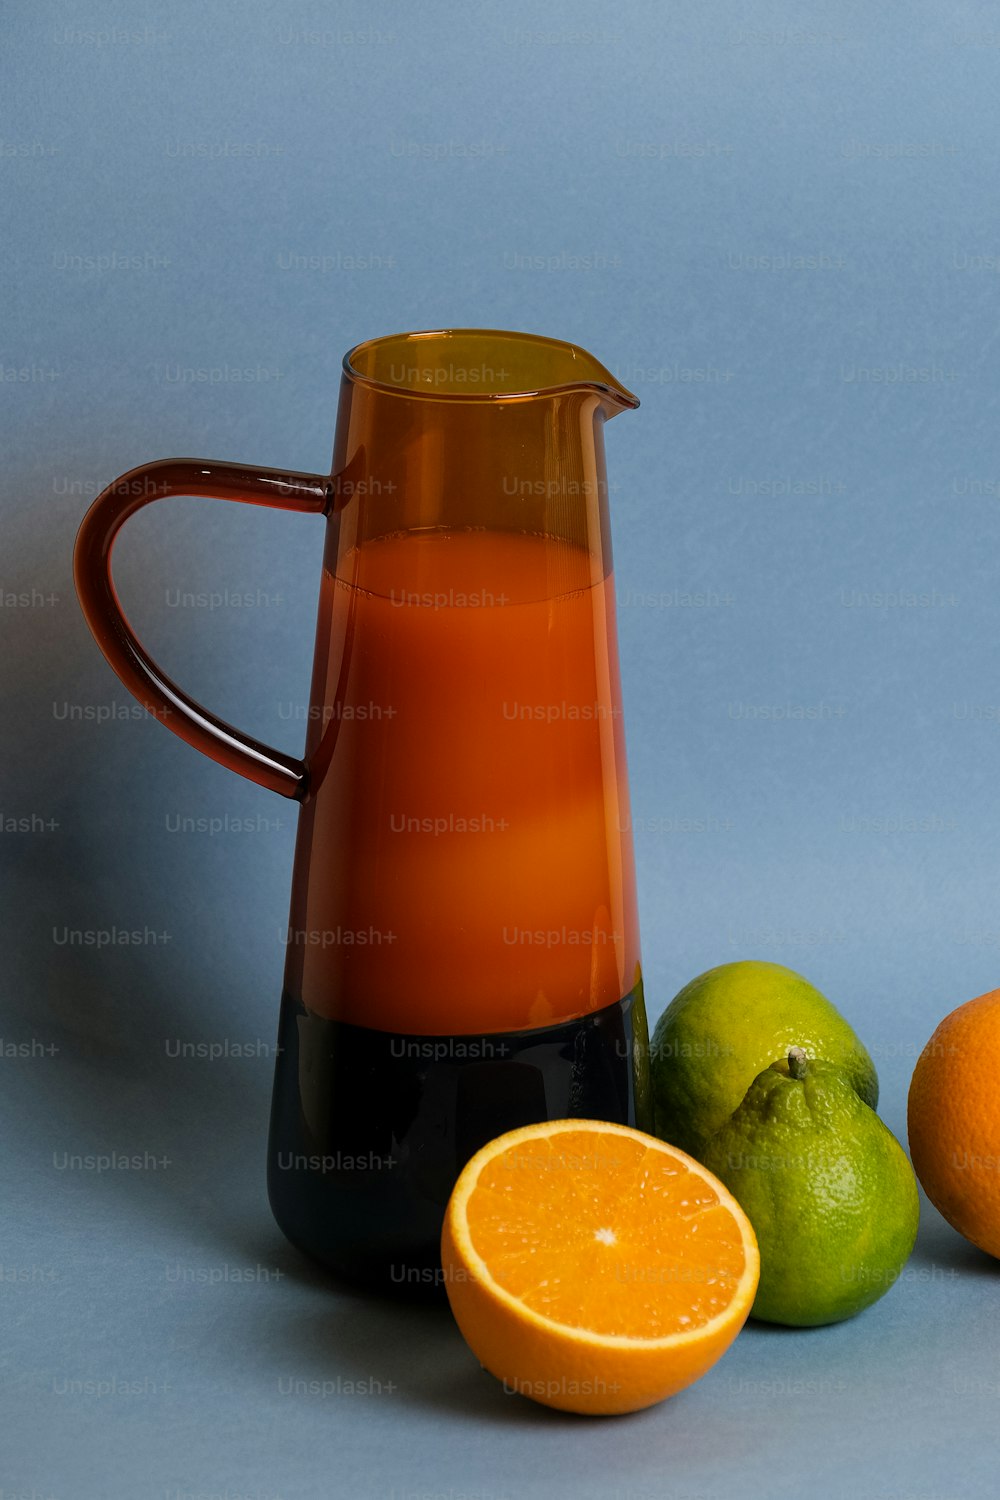 una jarra de jugo de naranja junto a dos limas y una naranja